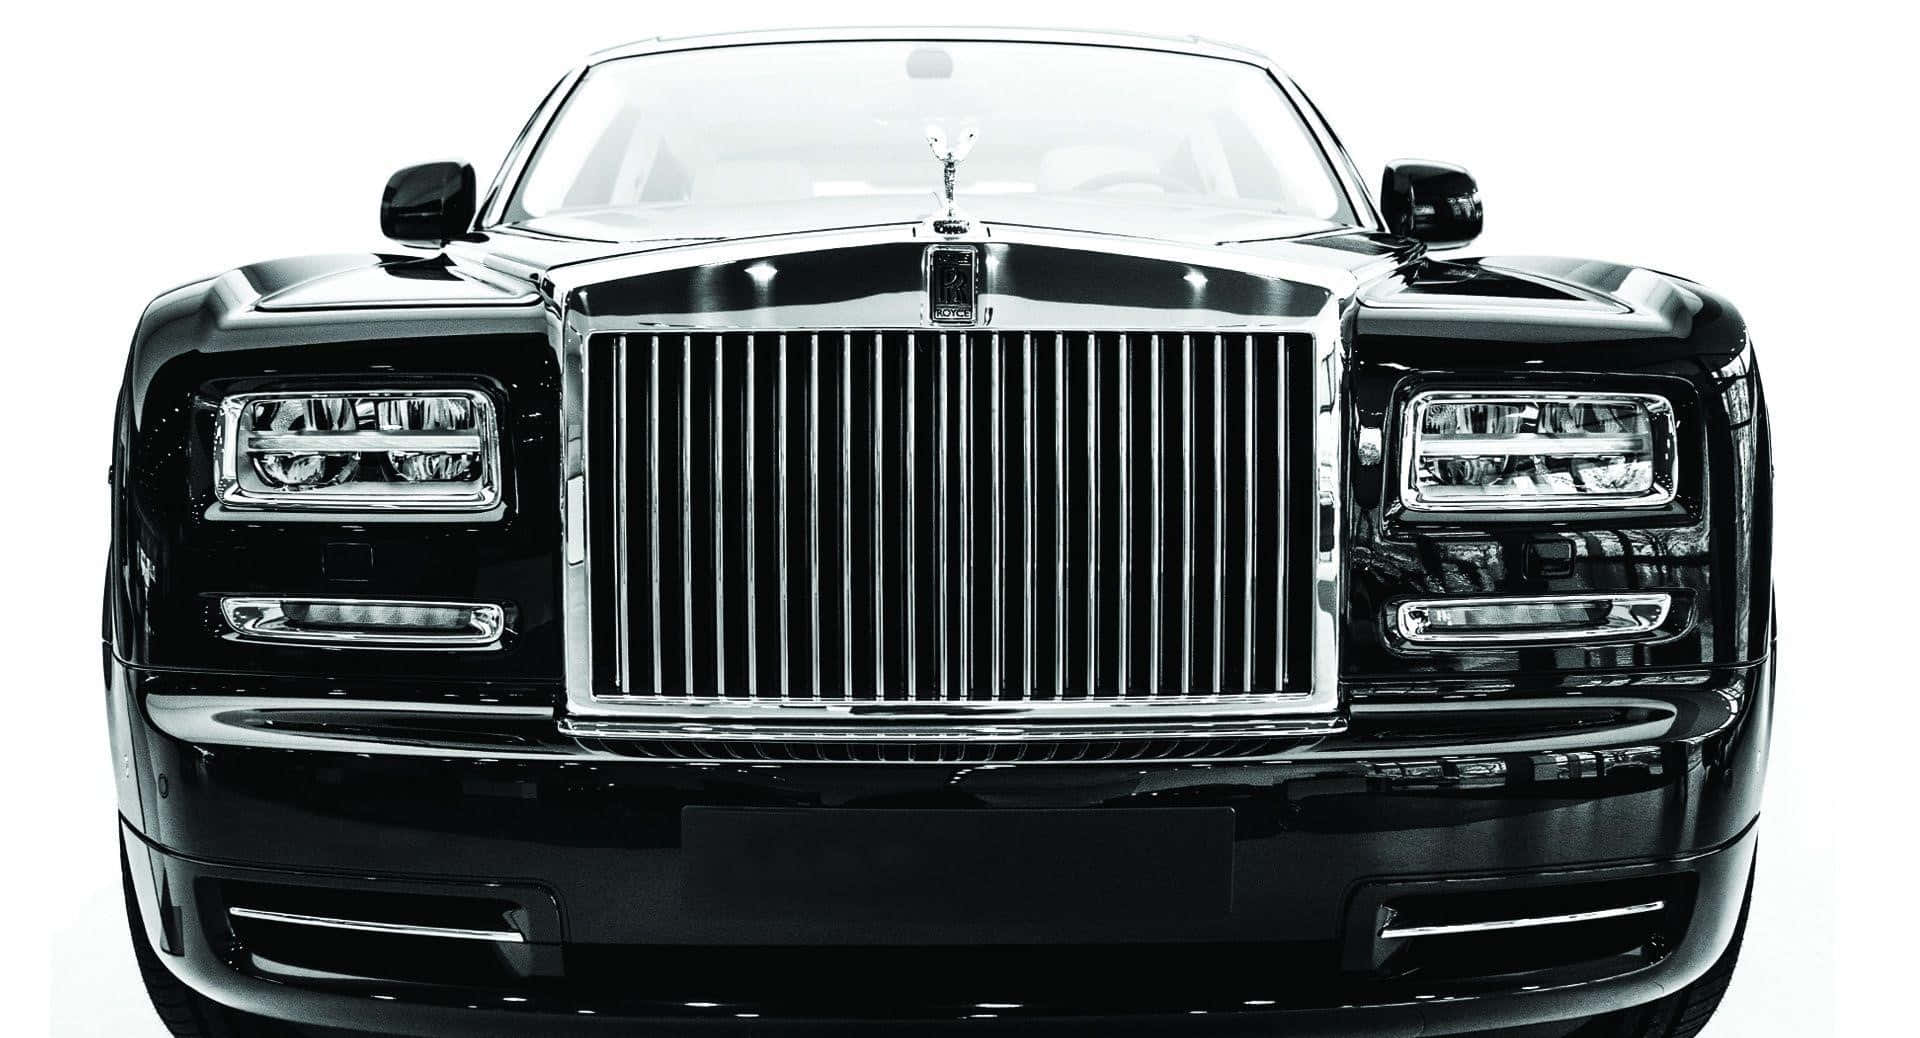 Majestic Rolls Royce Sweptail Luxurious Ride Wallpaper